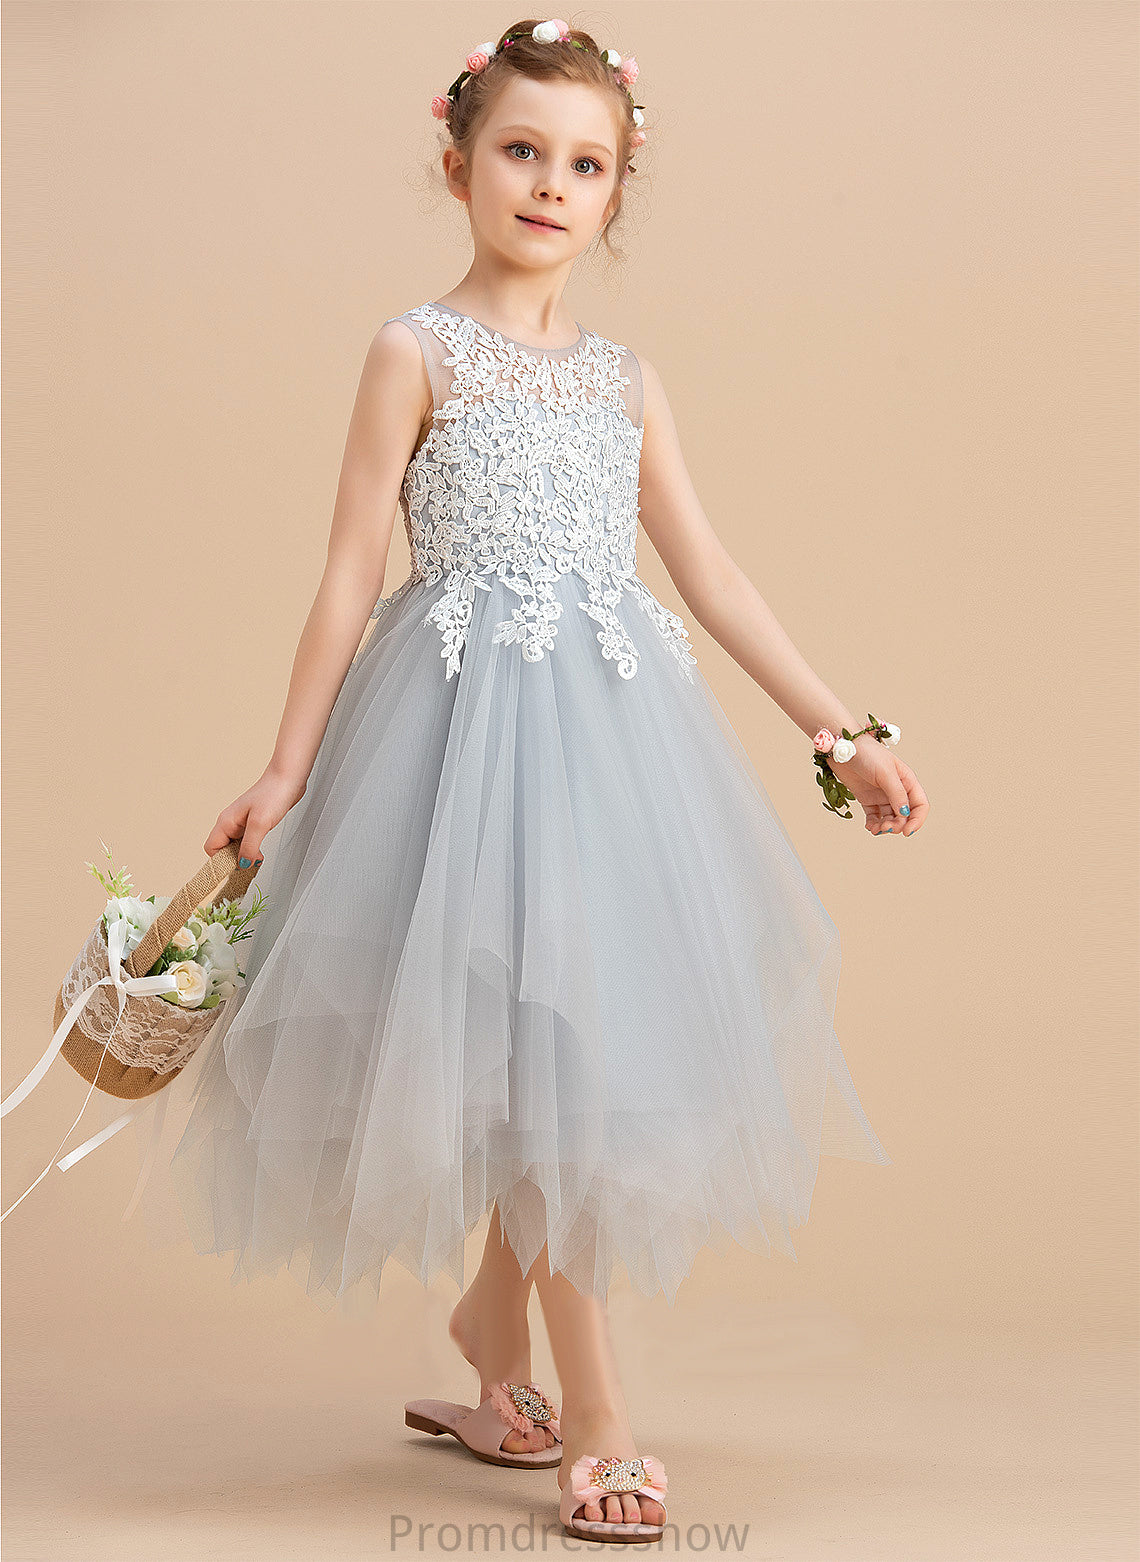 - Marely Girl Dress Scoop Neck Sleeveless Tea-length A-Line Tulle/Lace Flower Flower Girl Dresses